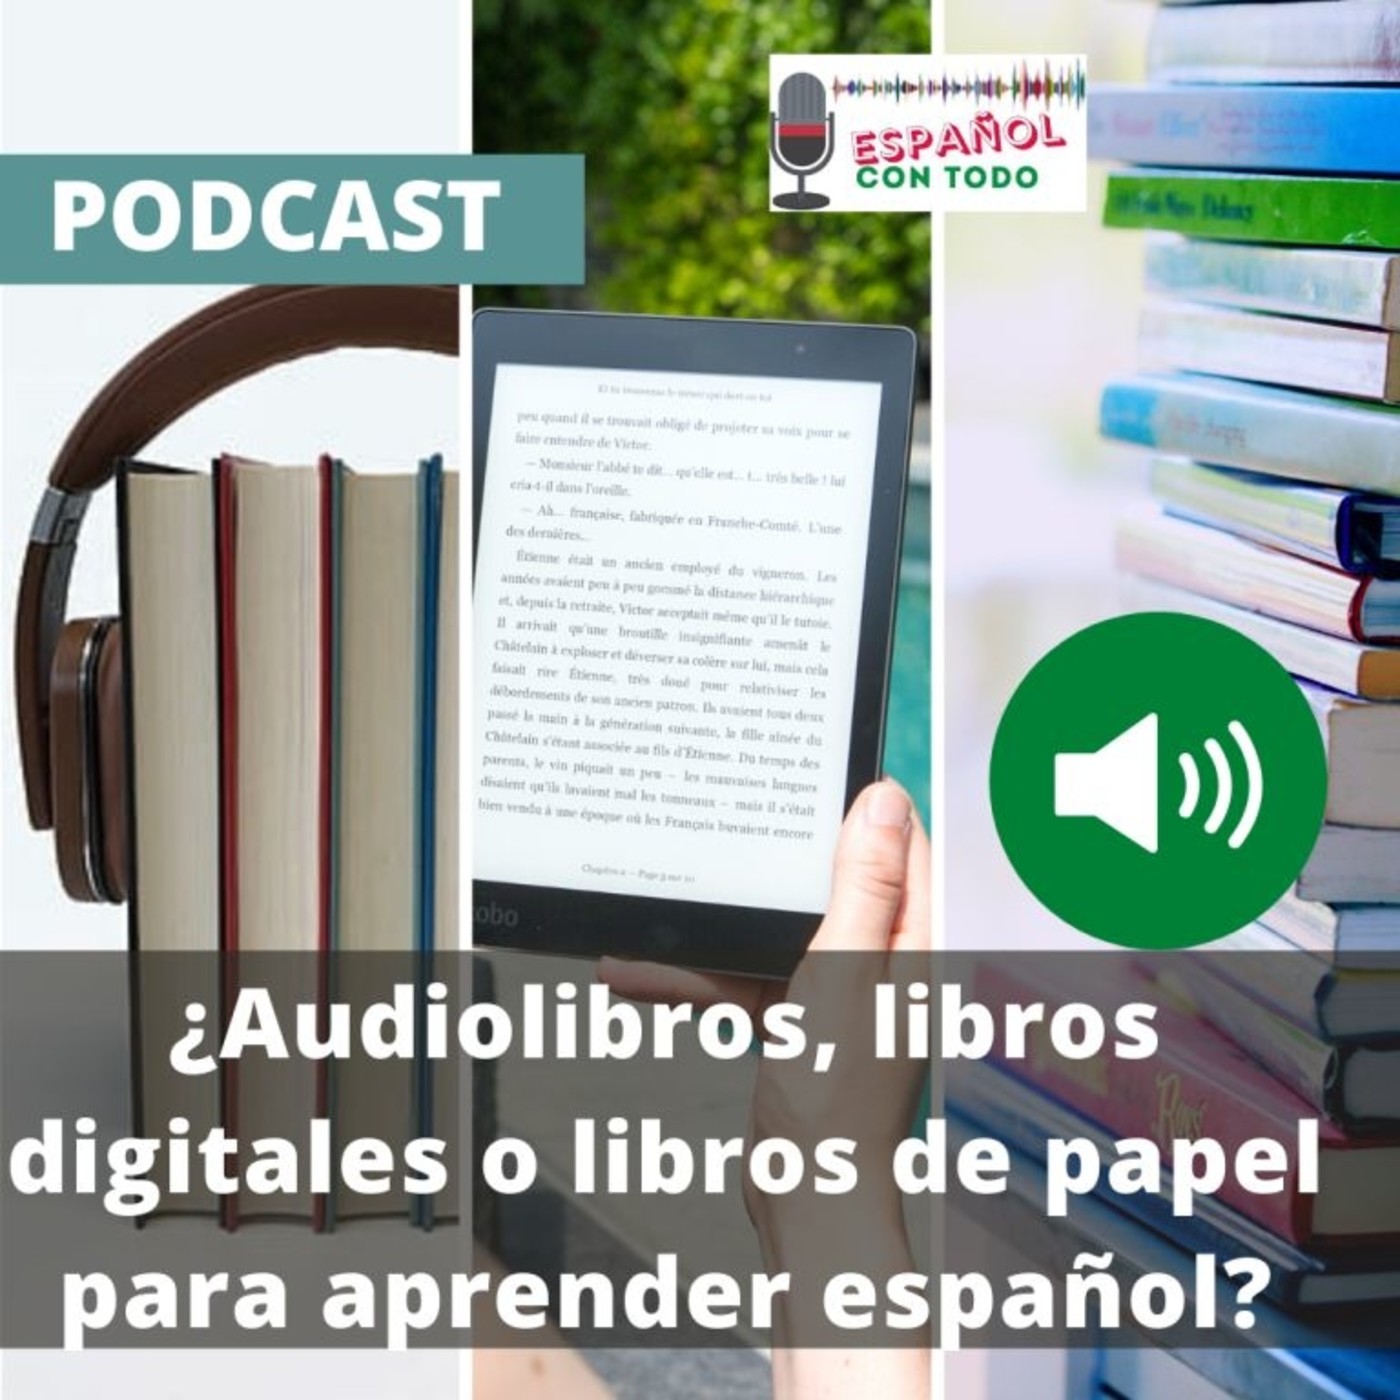 018 - Audiolibros, libros digitales o libros de papel ¿Cuál es mejor para aprender español?